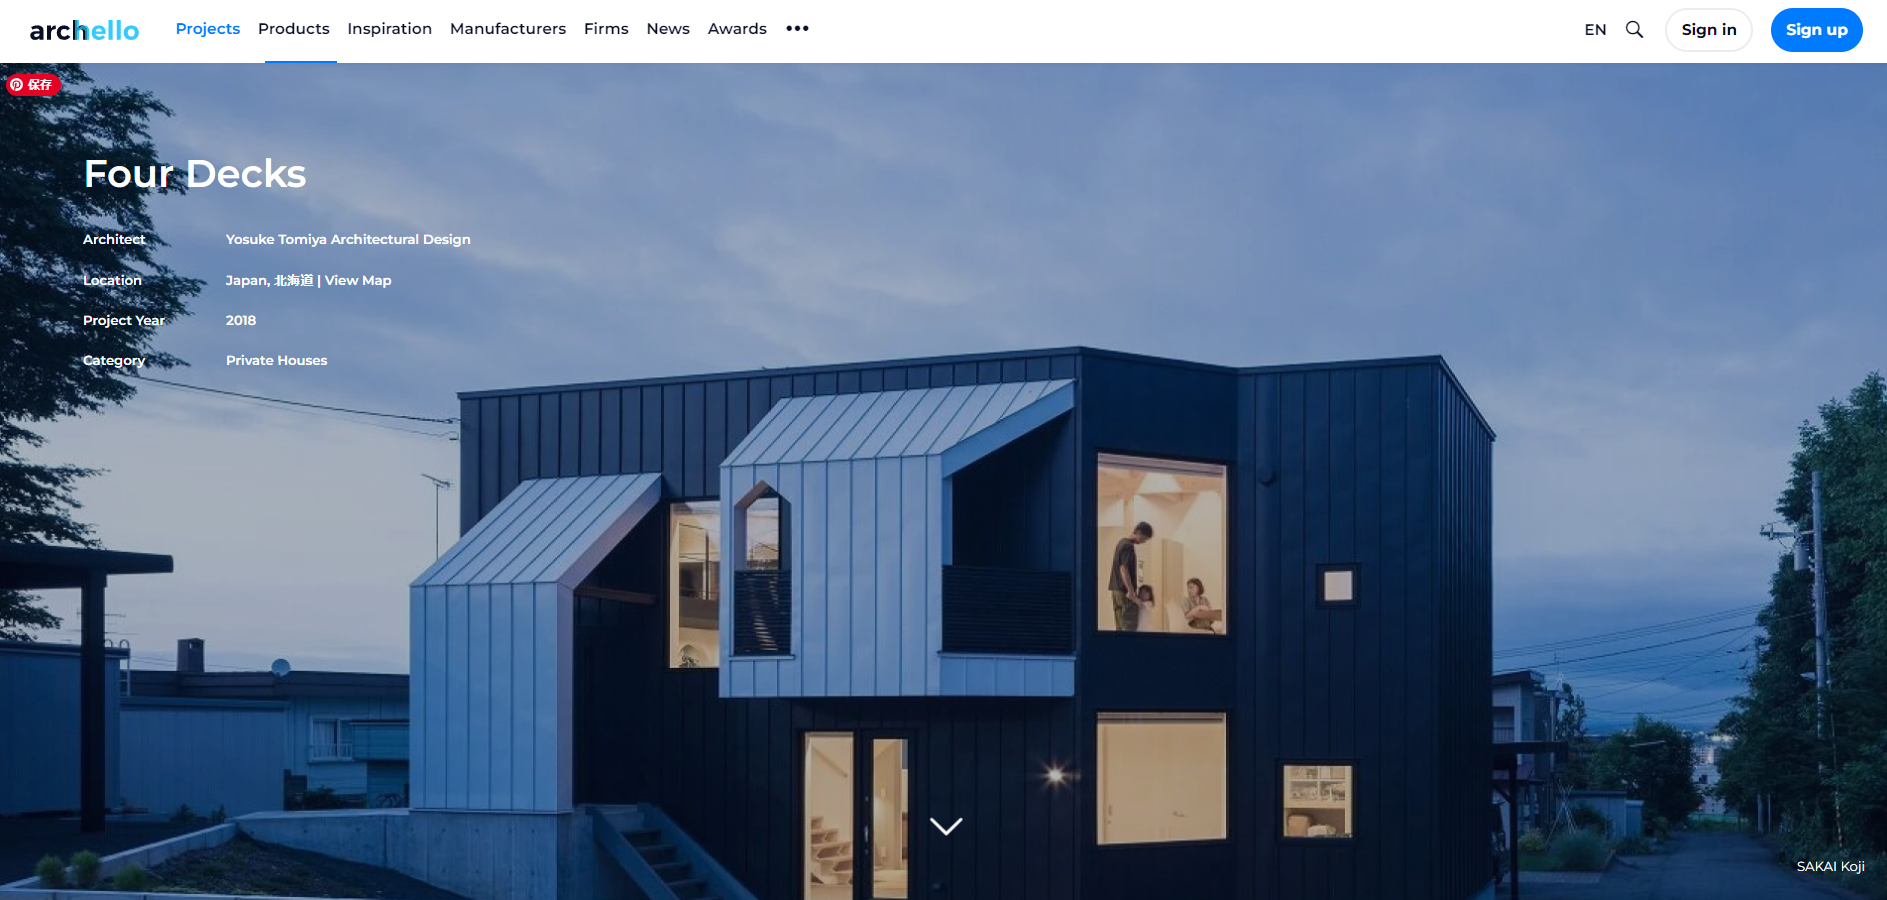 オランダの建築WEBメディア「archello」に[Four Decks]が掲載されました。